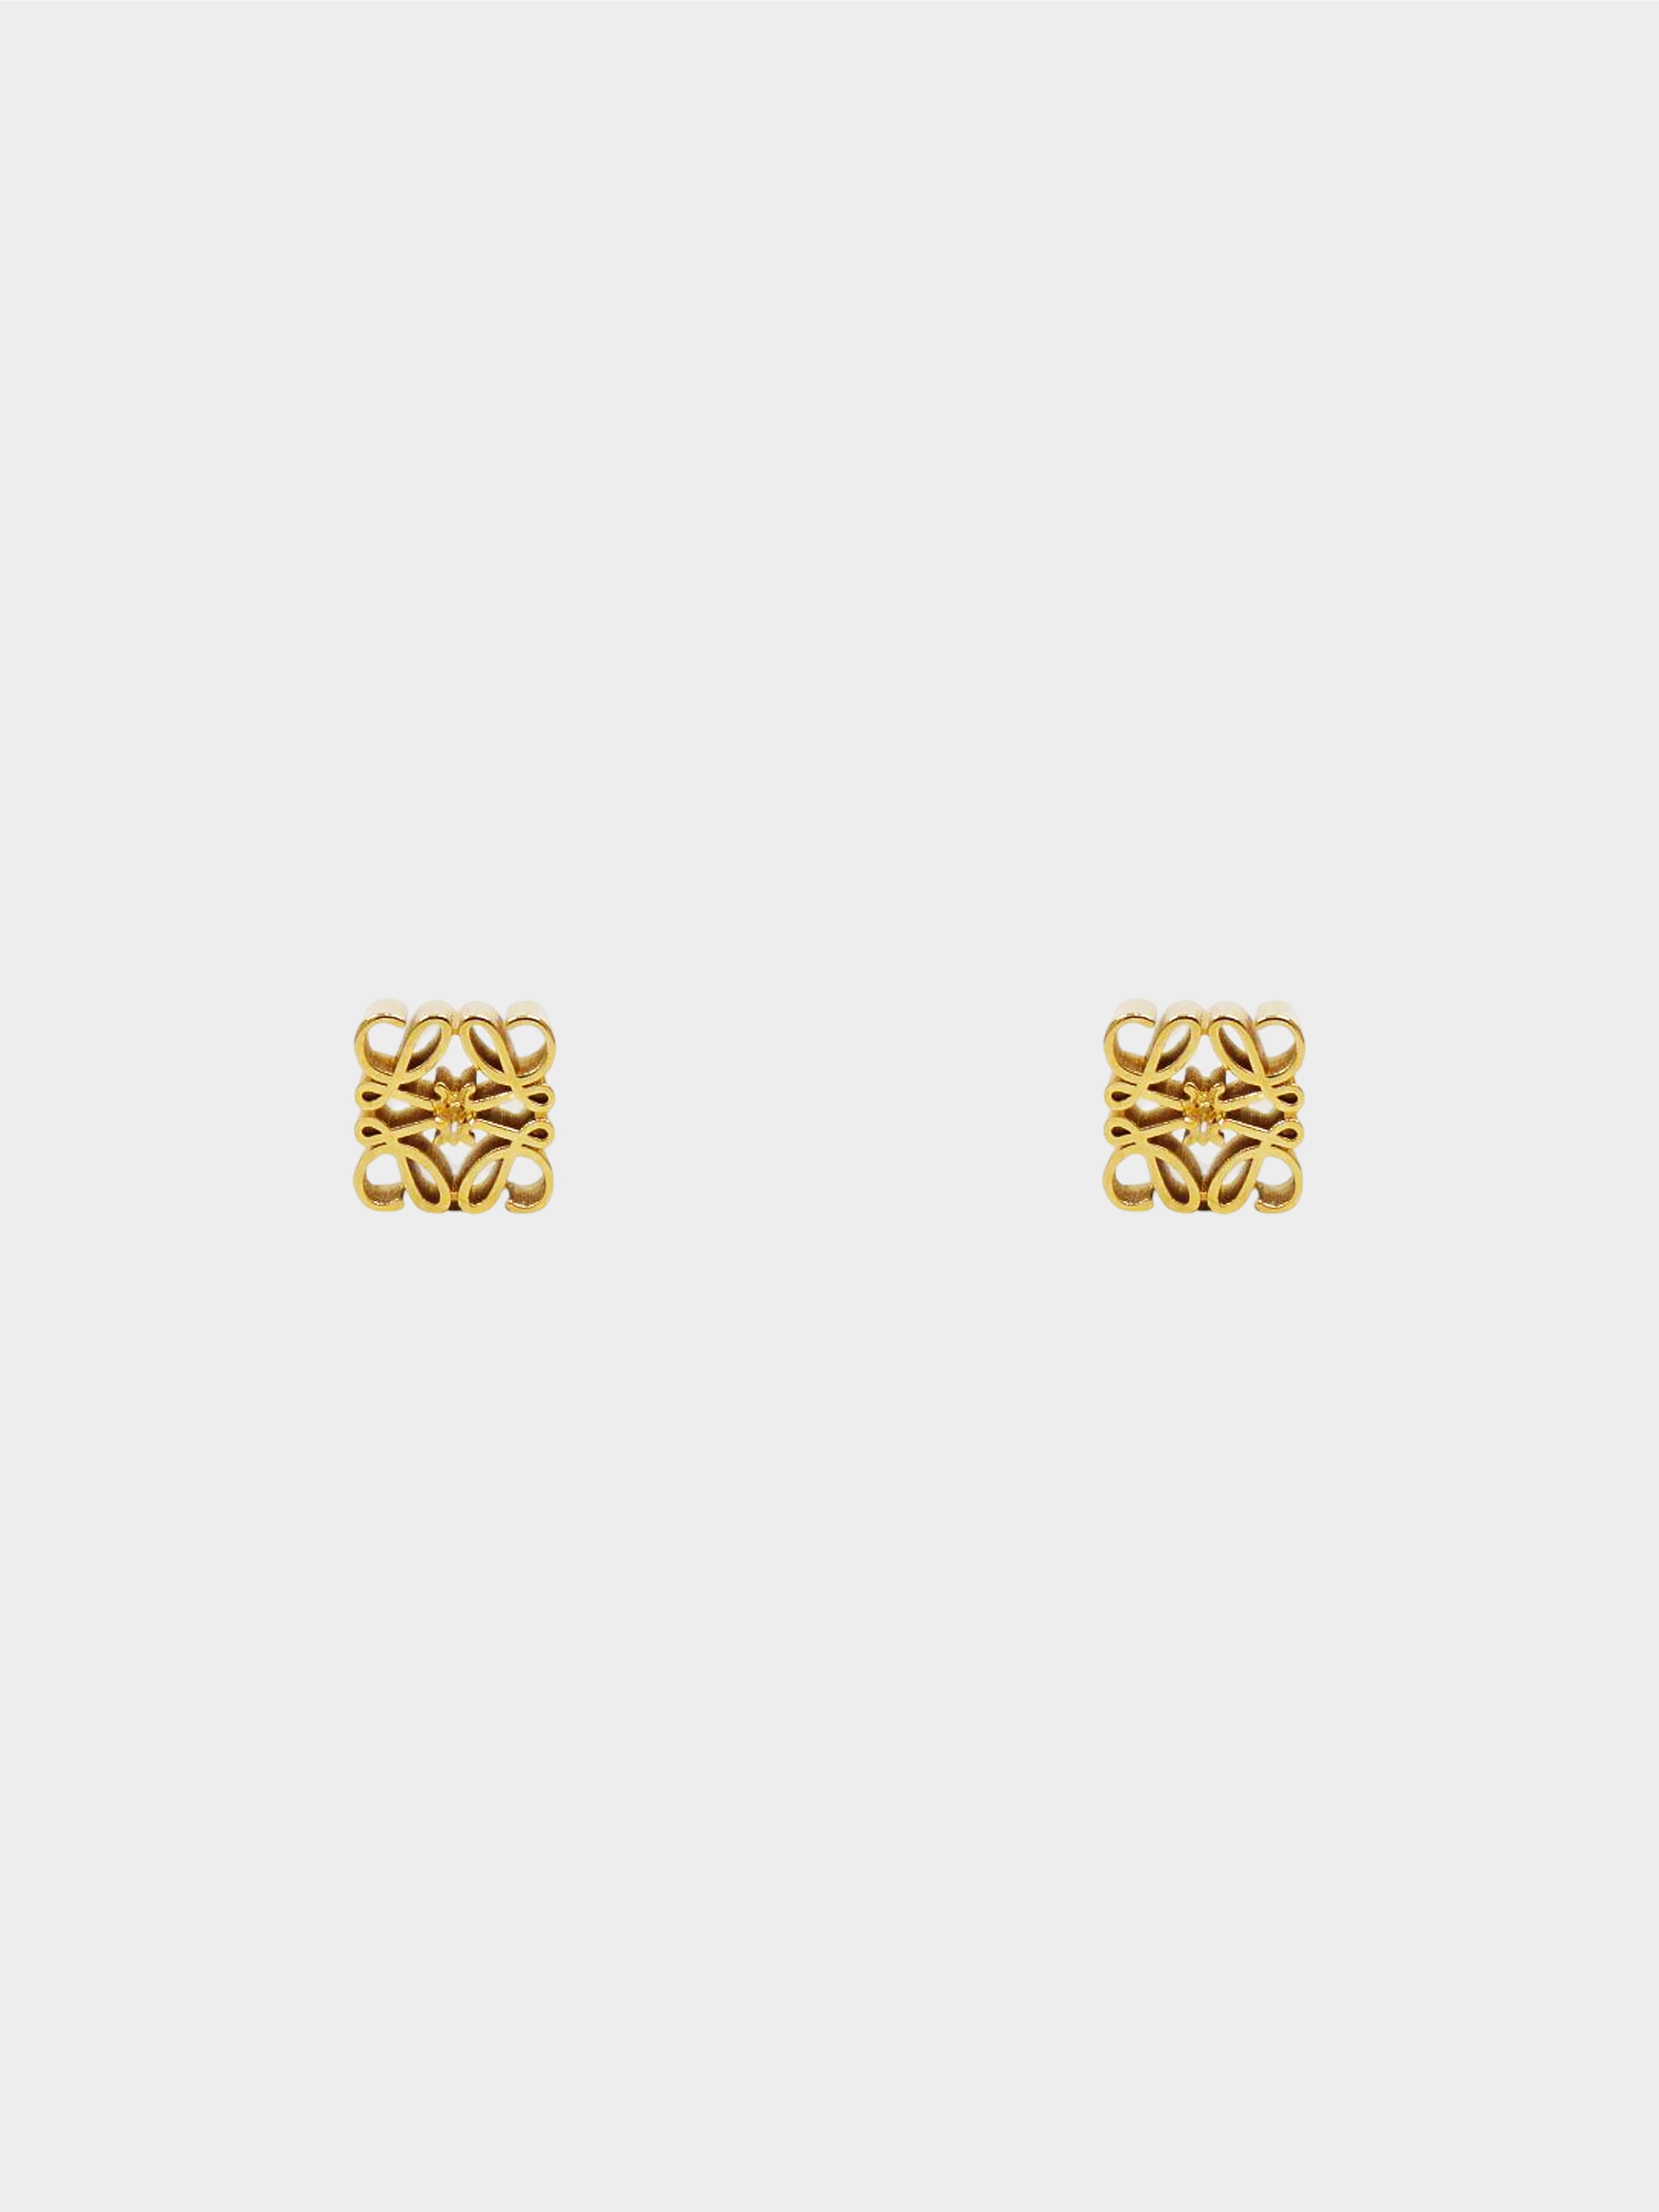 Loewe 2010s Gold Anagram Stud Earrings